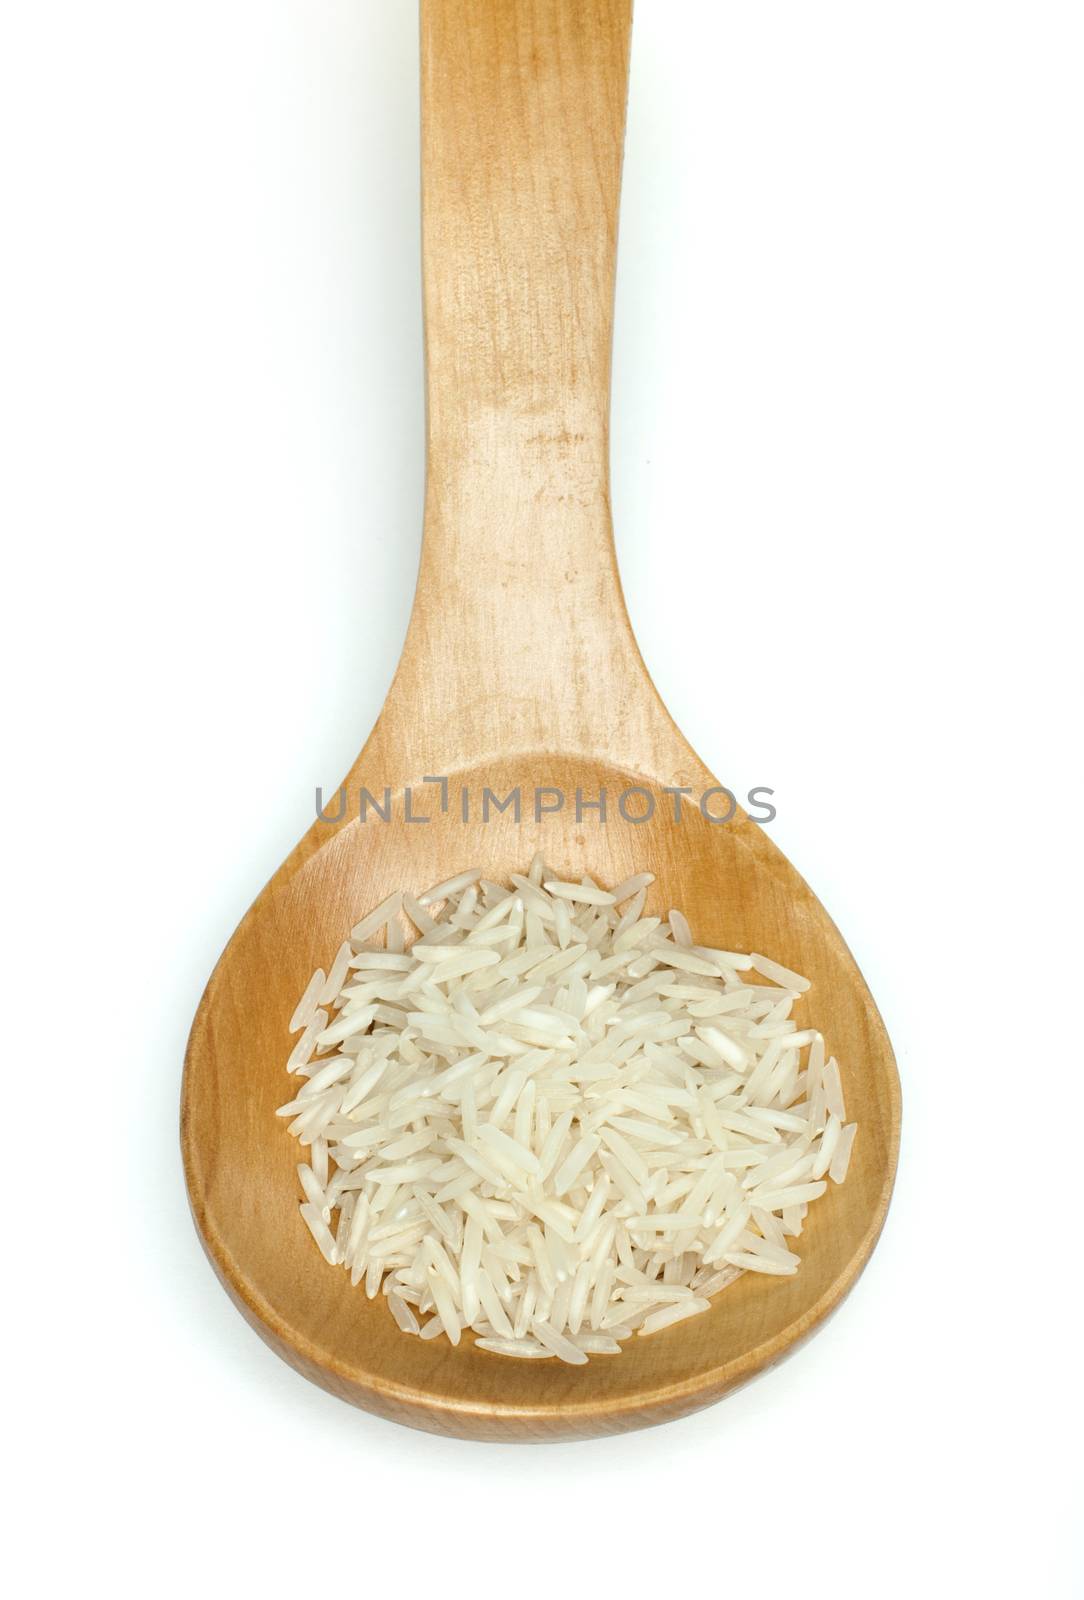 Basmati rice in wooden spoon  by deyan_georgiev